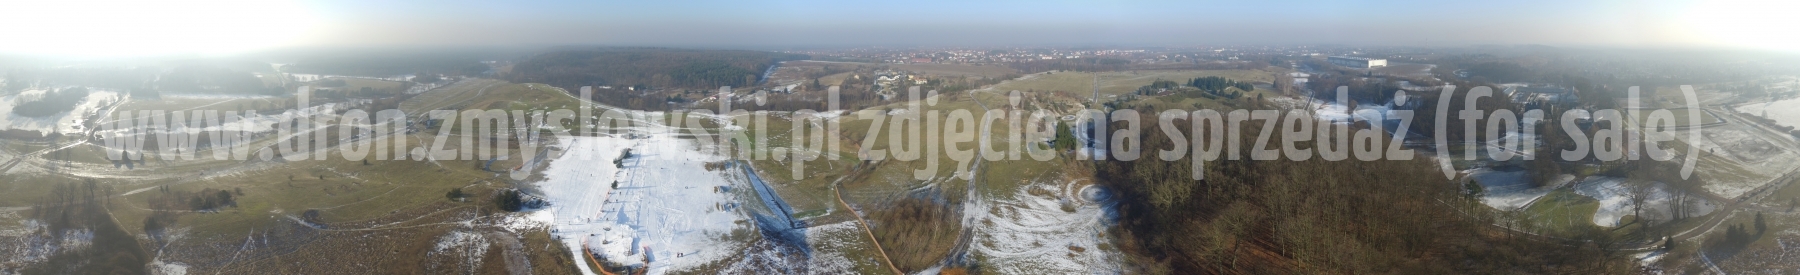 Bydgoszcz - stok narciarski i saneczkowy w Myślęcinku z drona - 2017